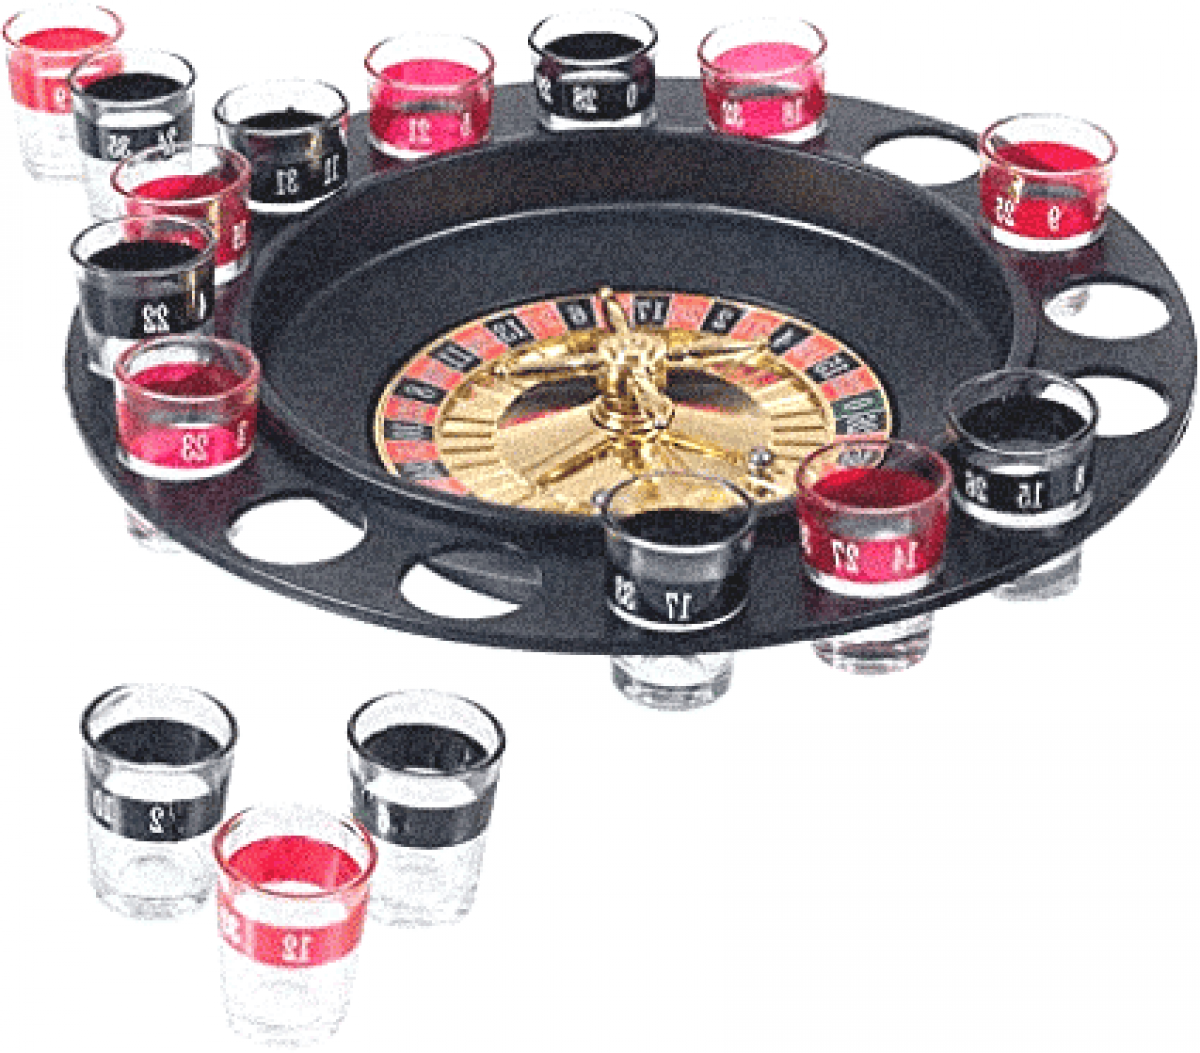 Wheel of shots, la roue des shooter jeu d'alcool pour soirées